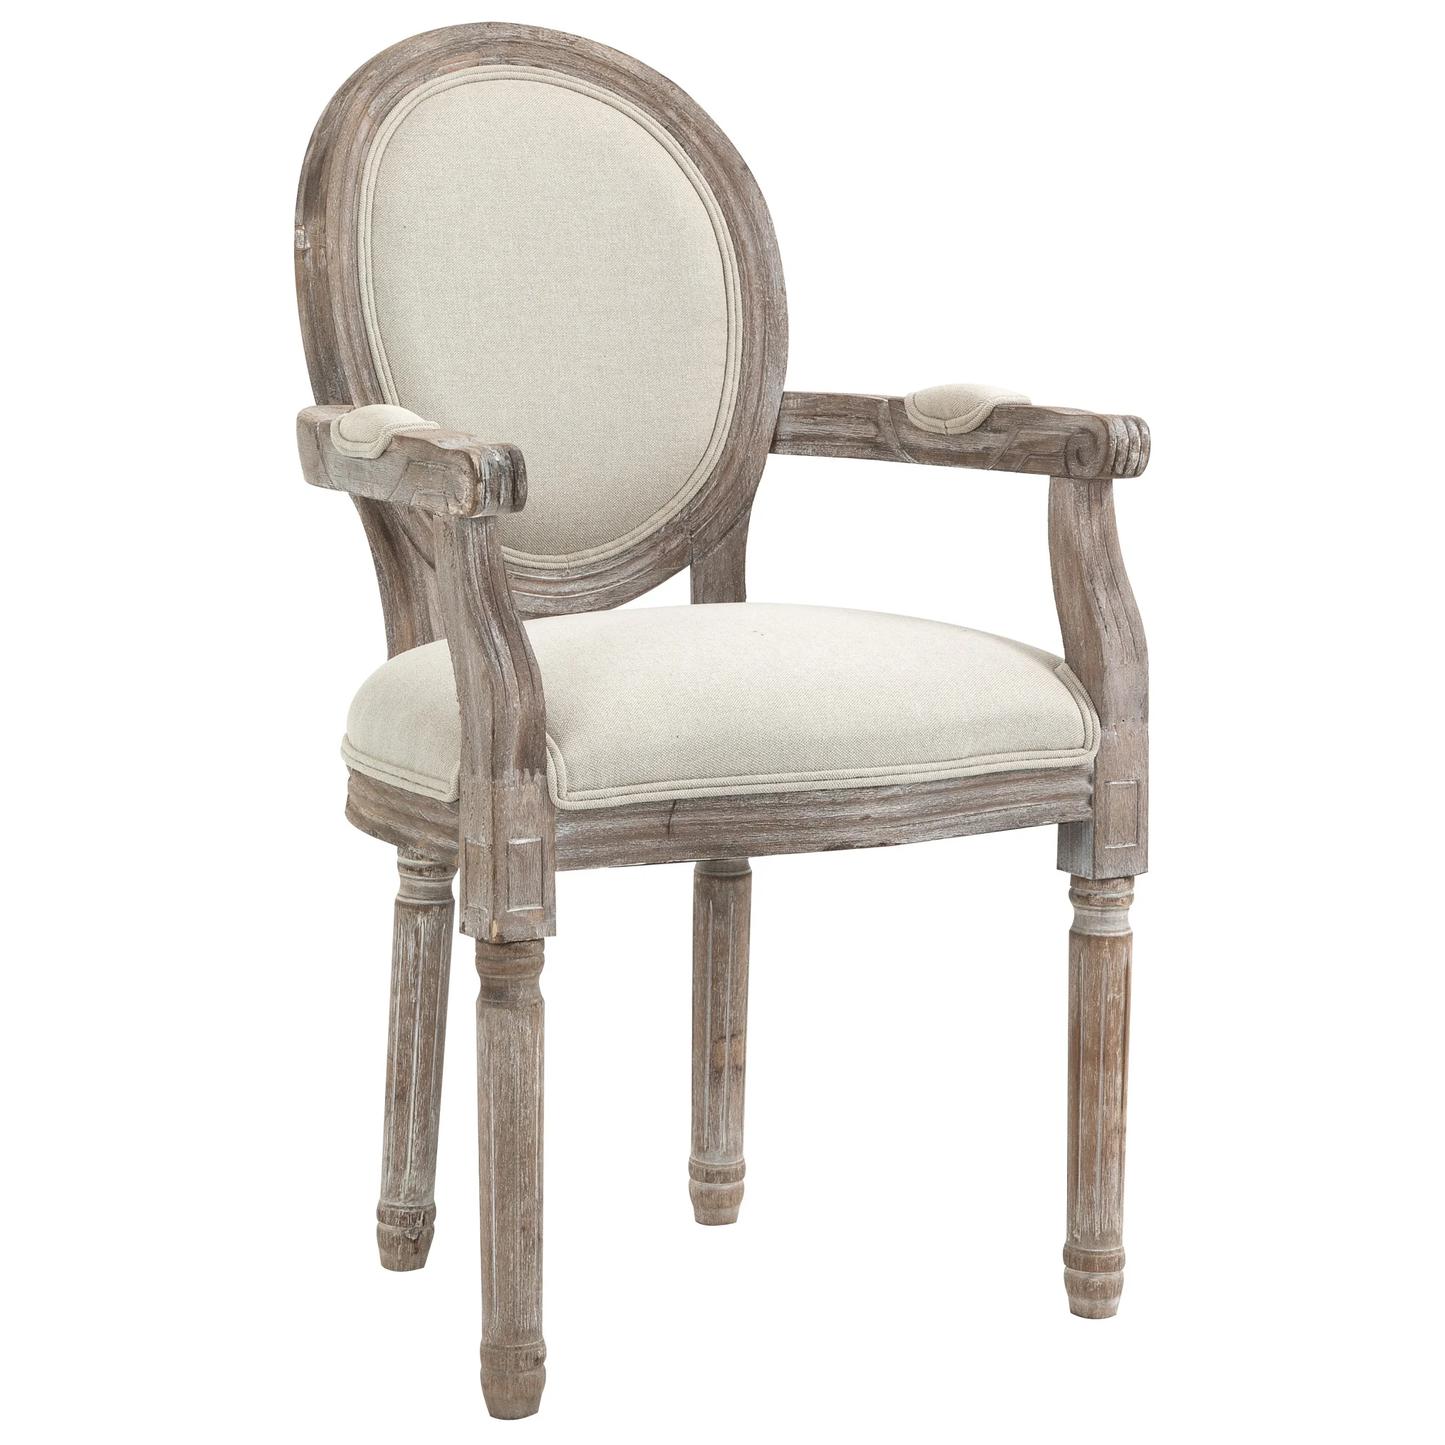 Chaise de salle à manger Boca Raton de Nancy - Chaise - Blanc crème - Classique - 56 x 55,5 x 96 cm